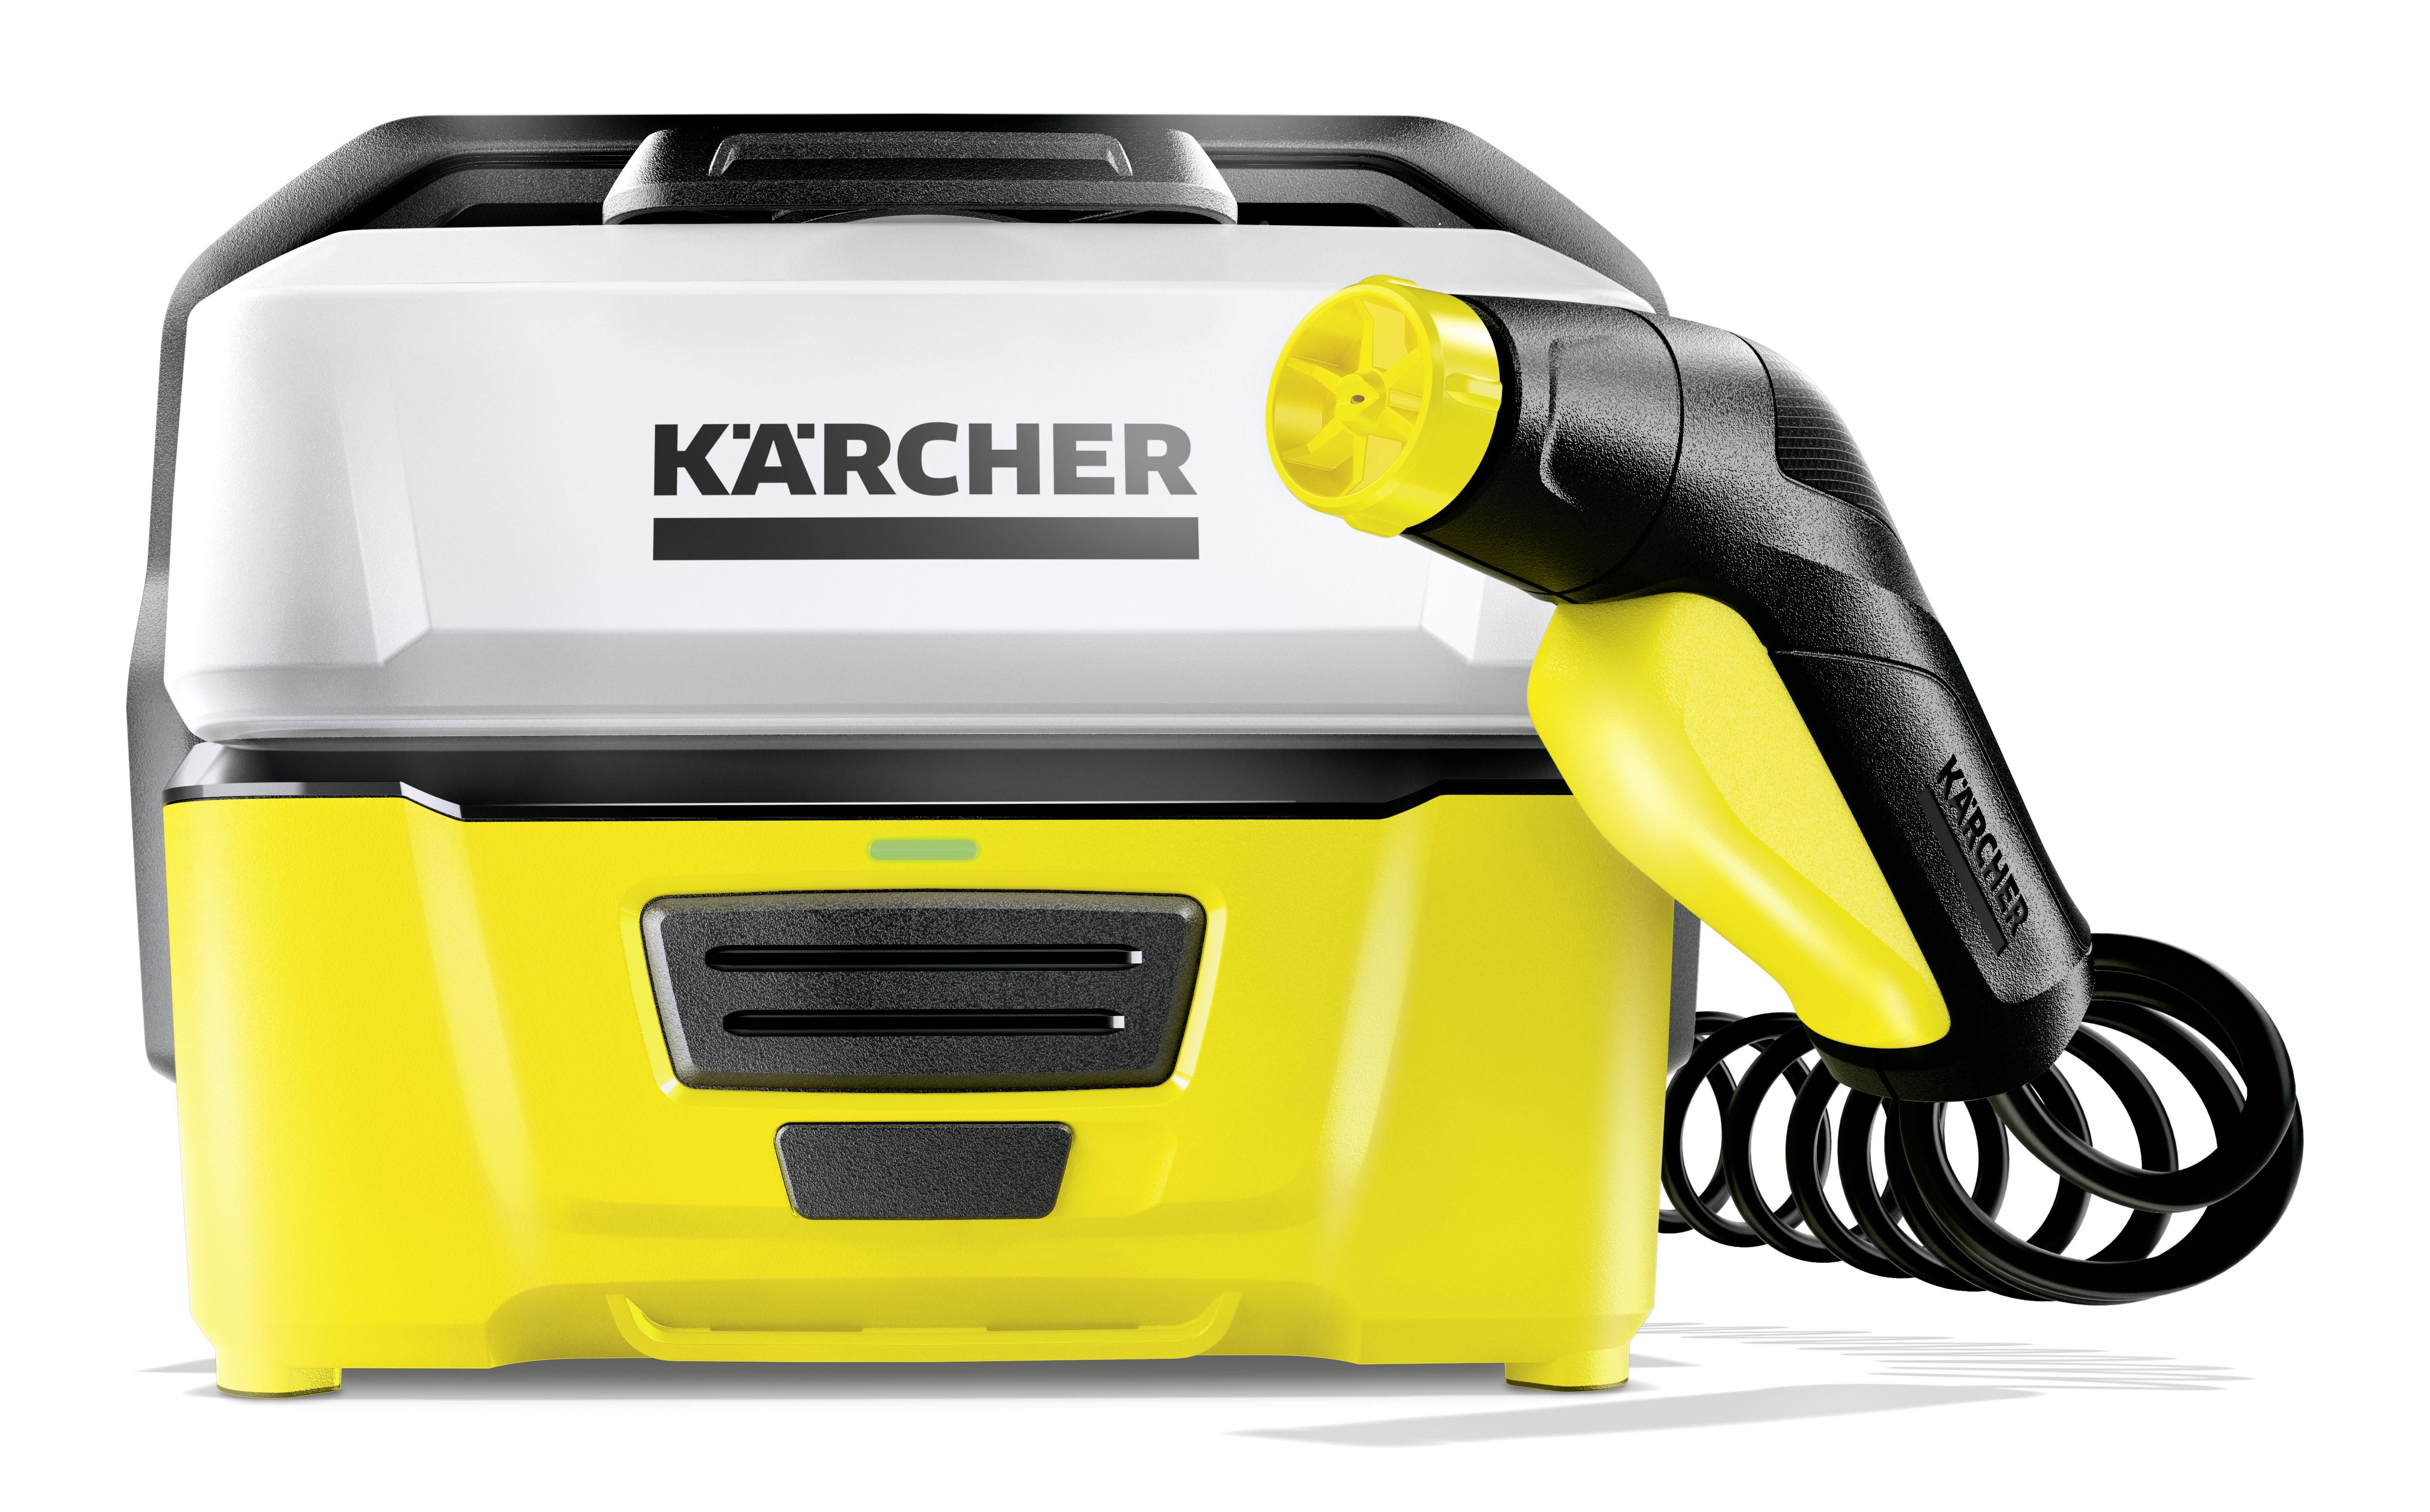 Kärcher OC3 - Outdoor Cleaner mini pressure washer